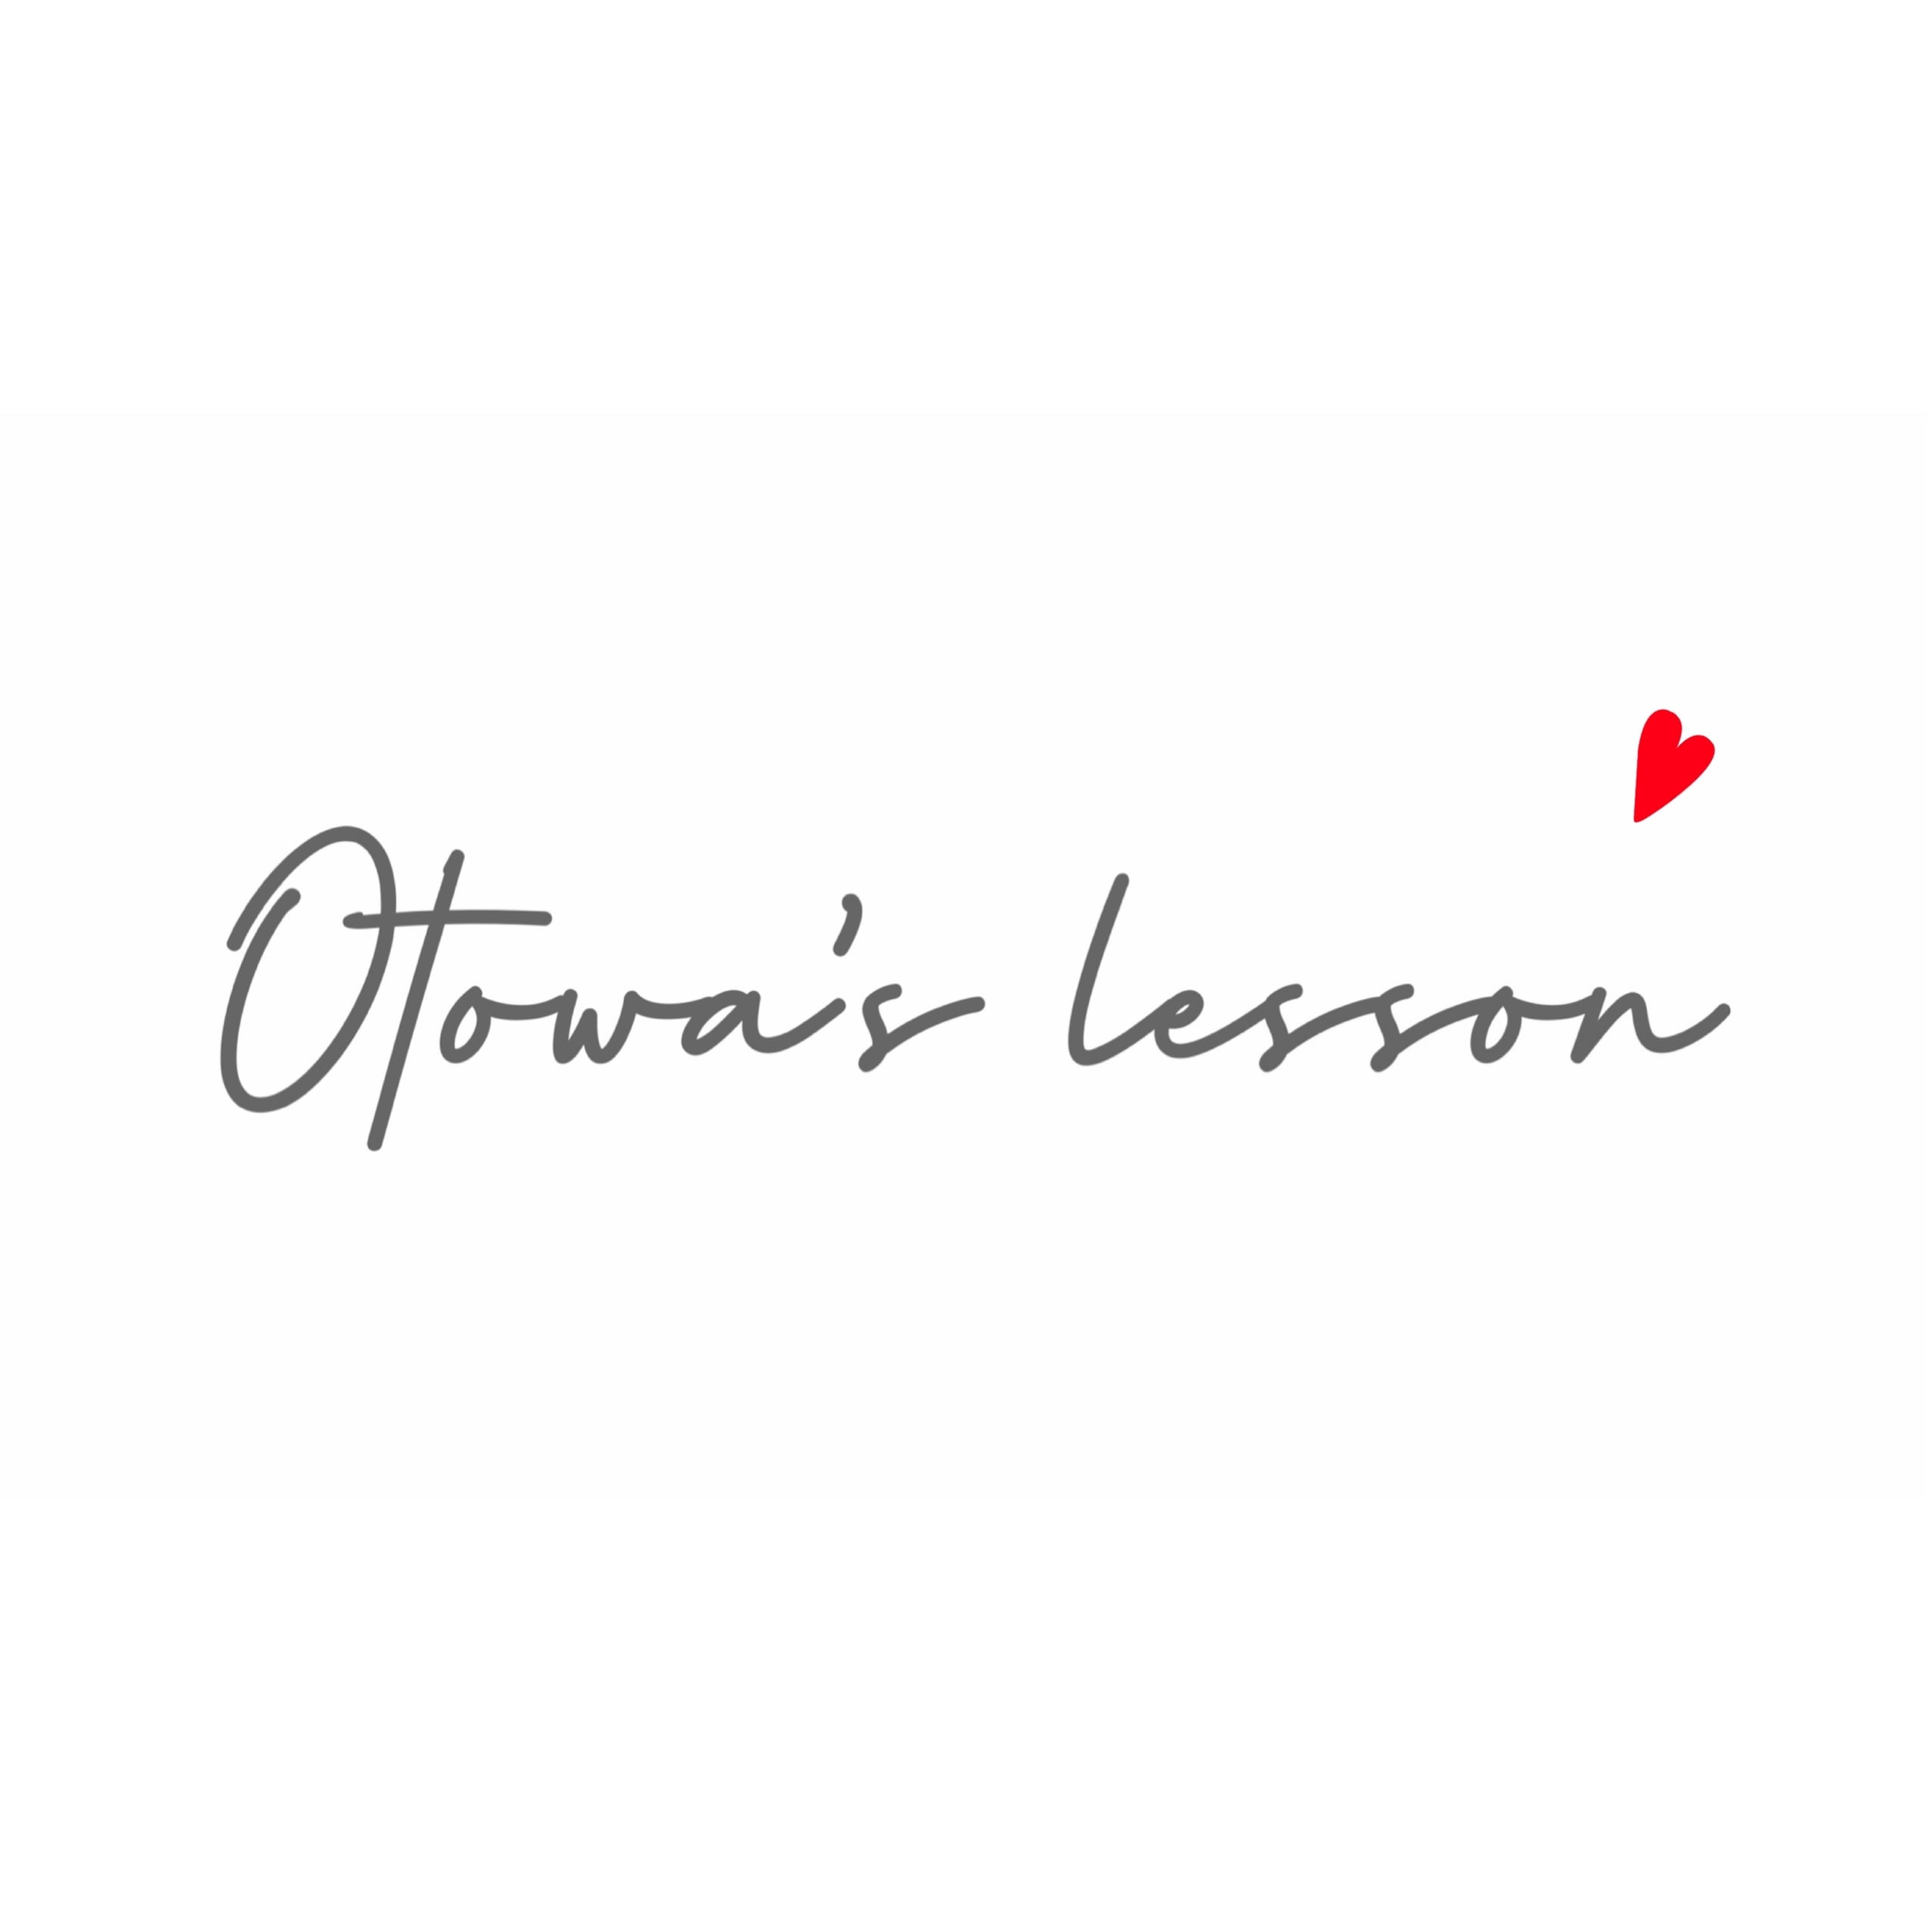 Otowa's lesson